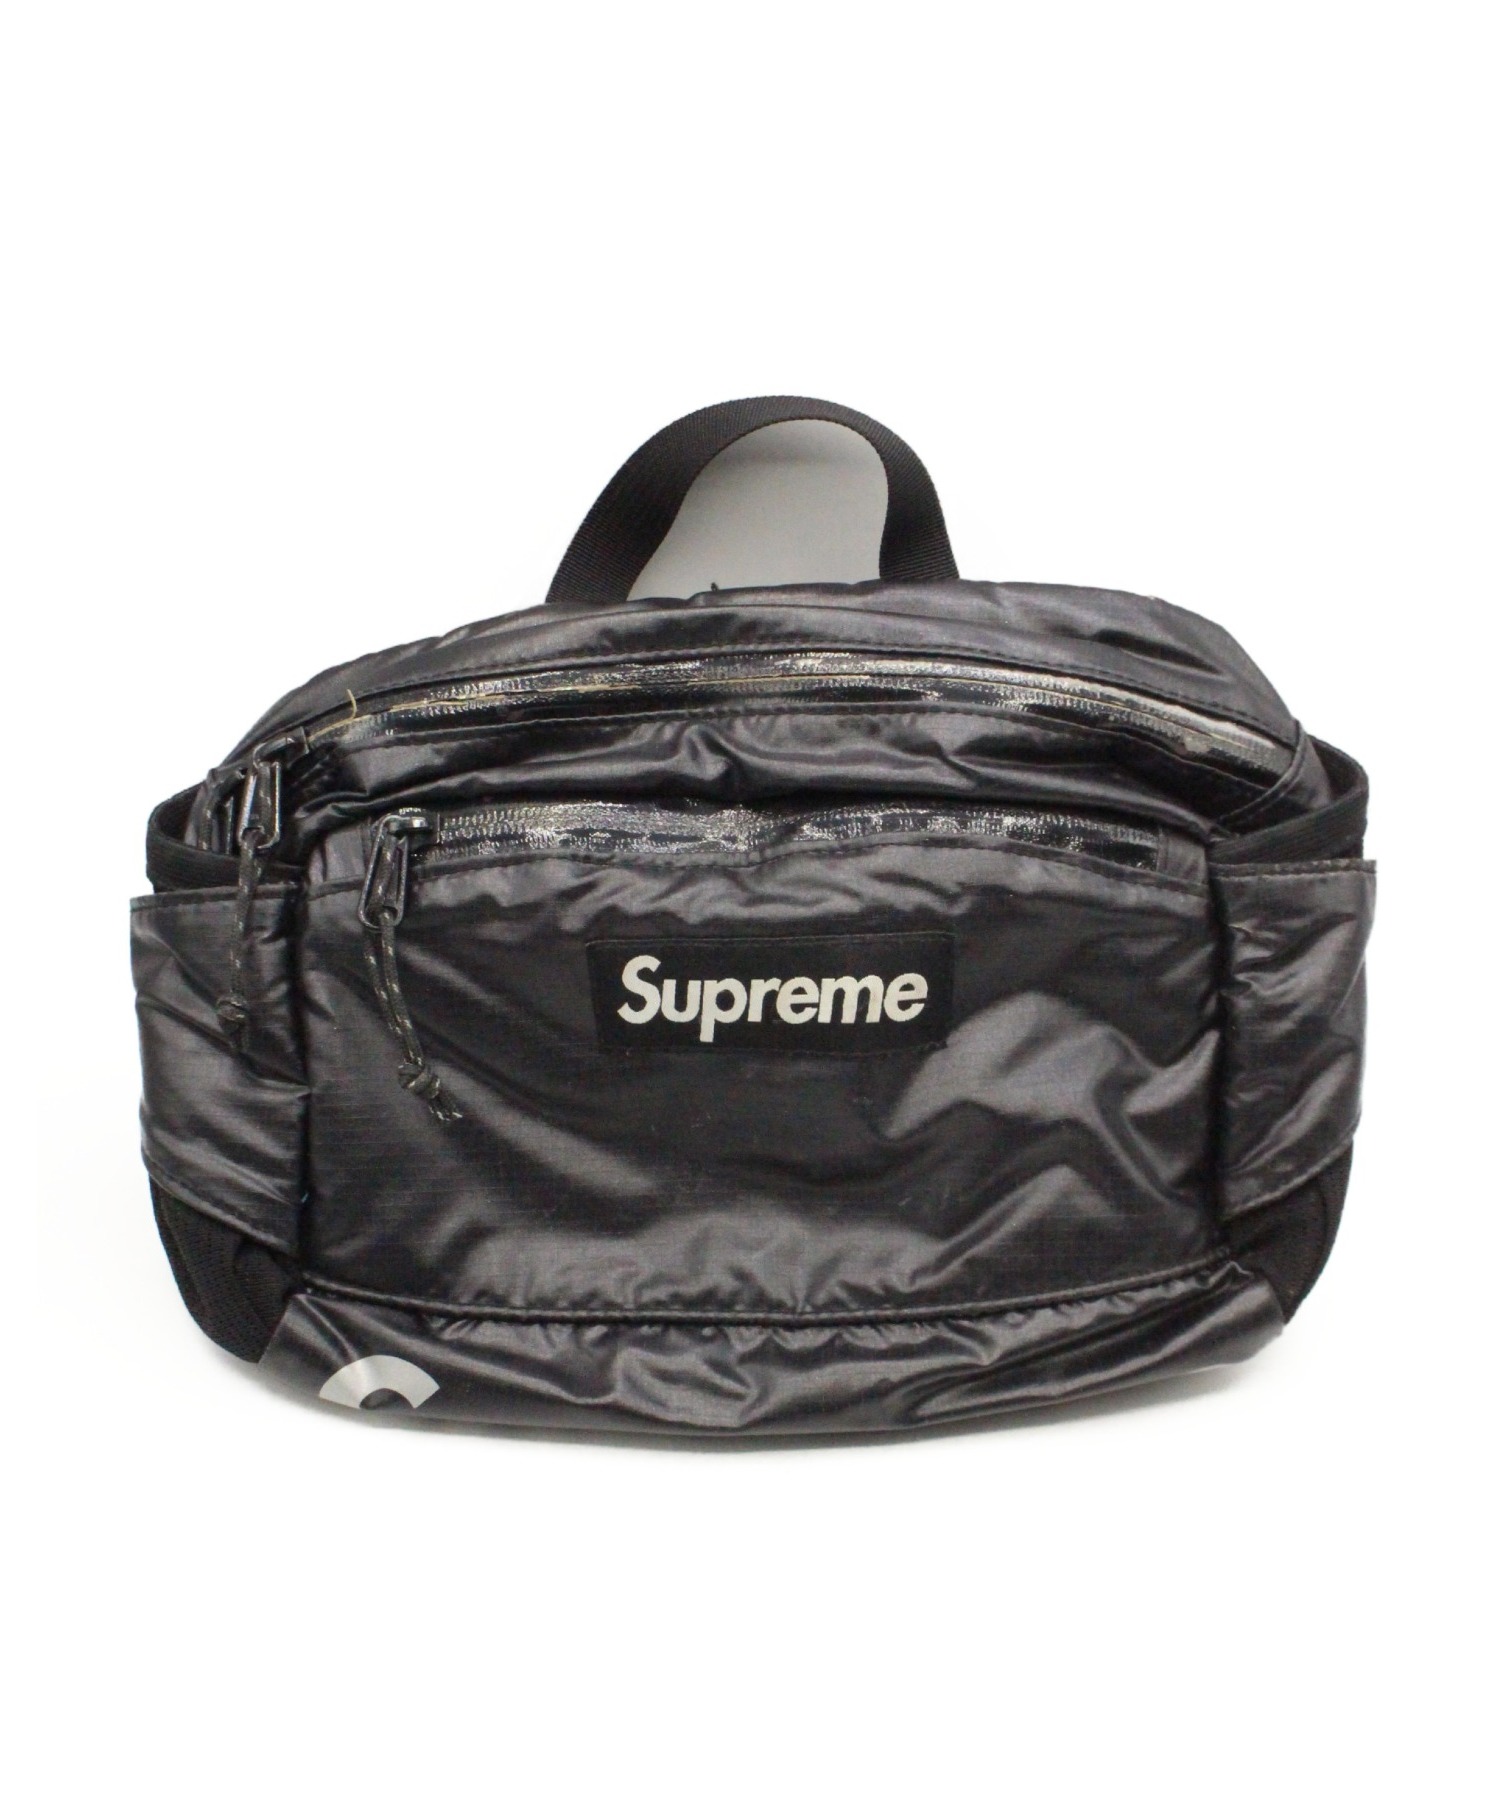 supreme 17aw waist bag black